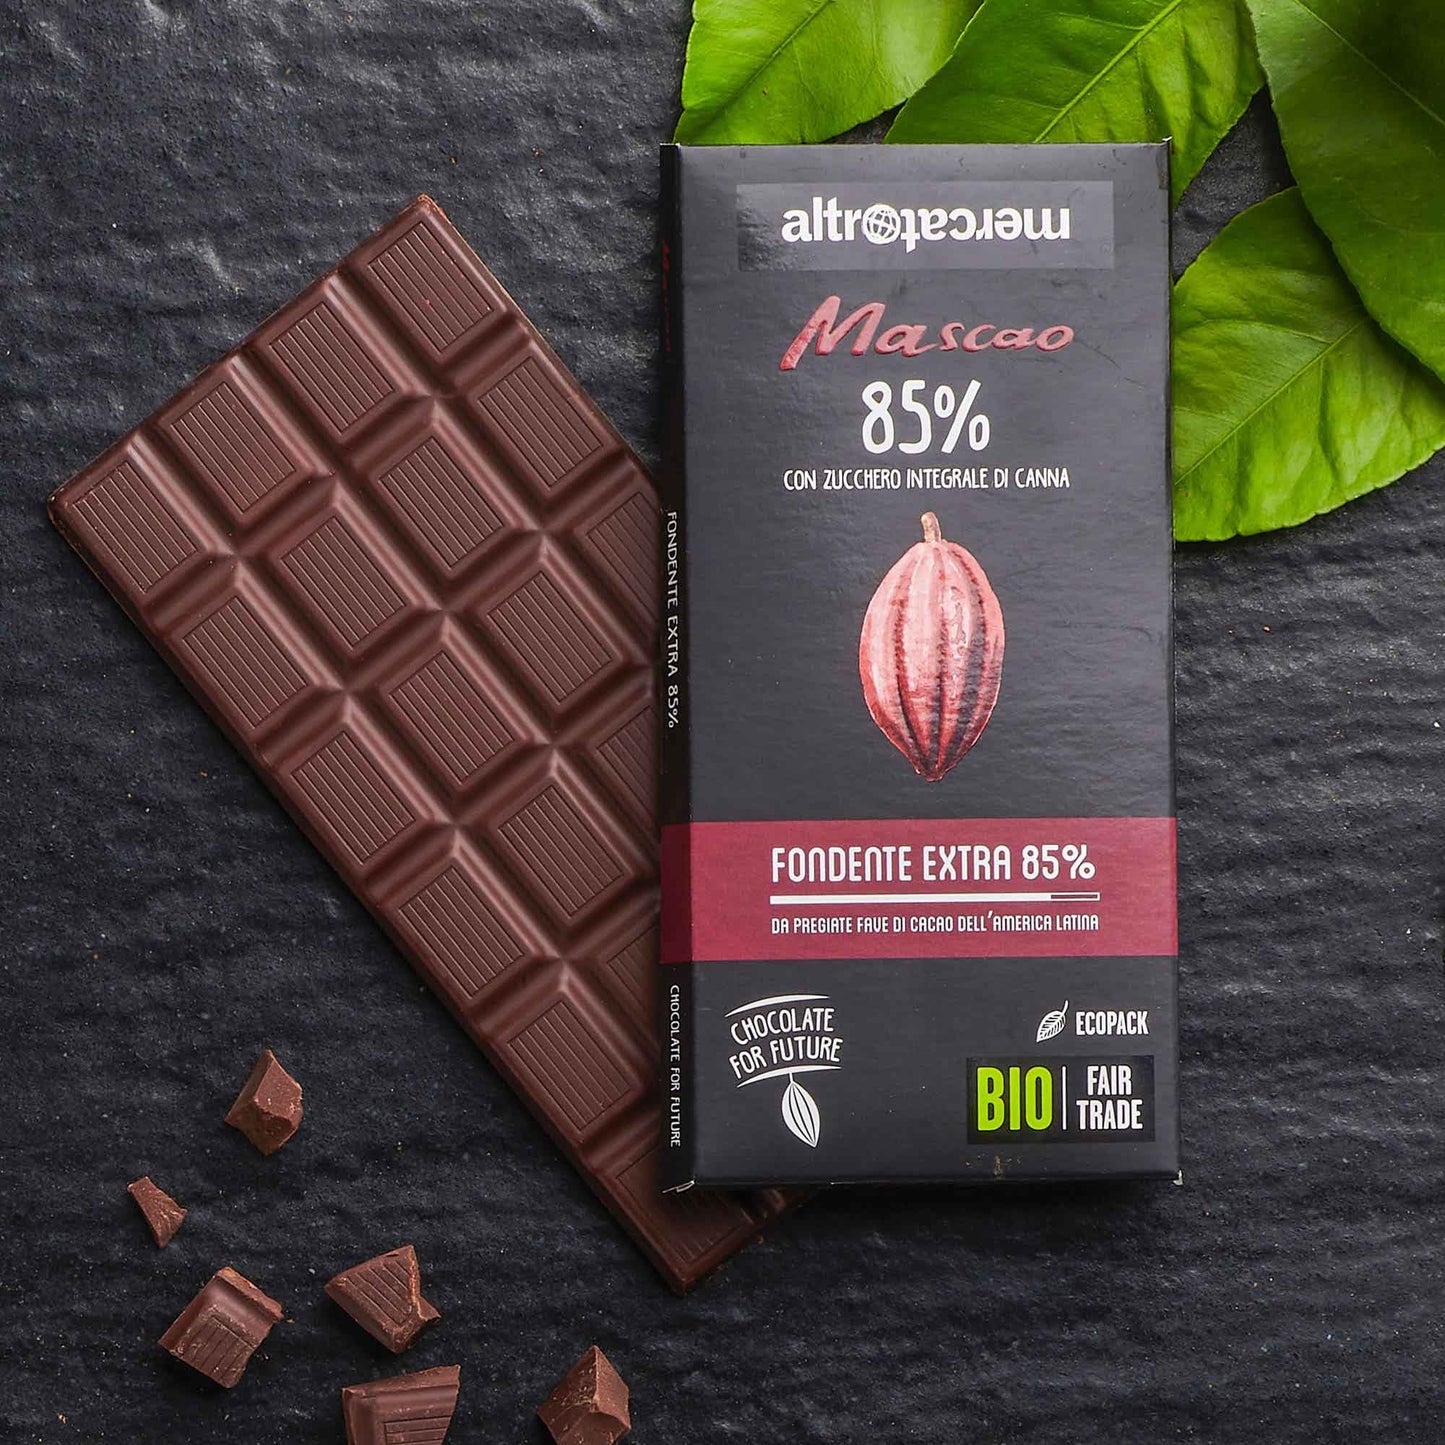 Cioccolato Mascao fondente 85% Bio